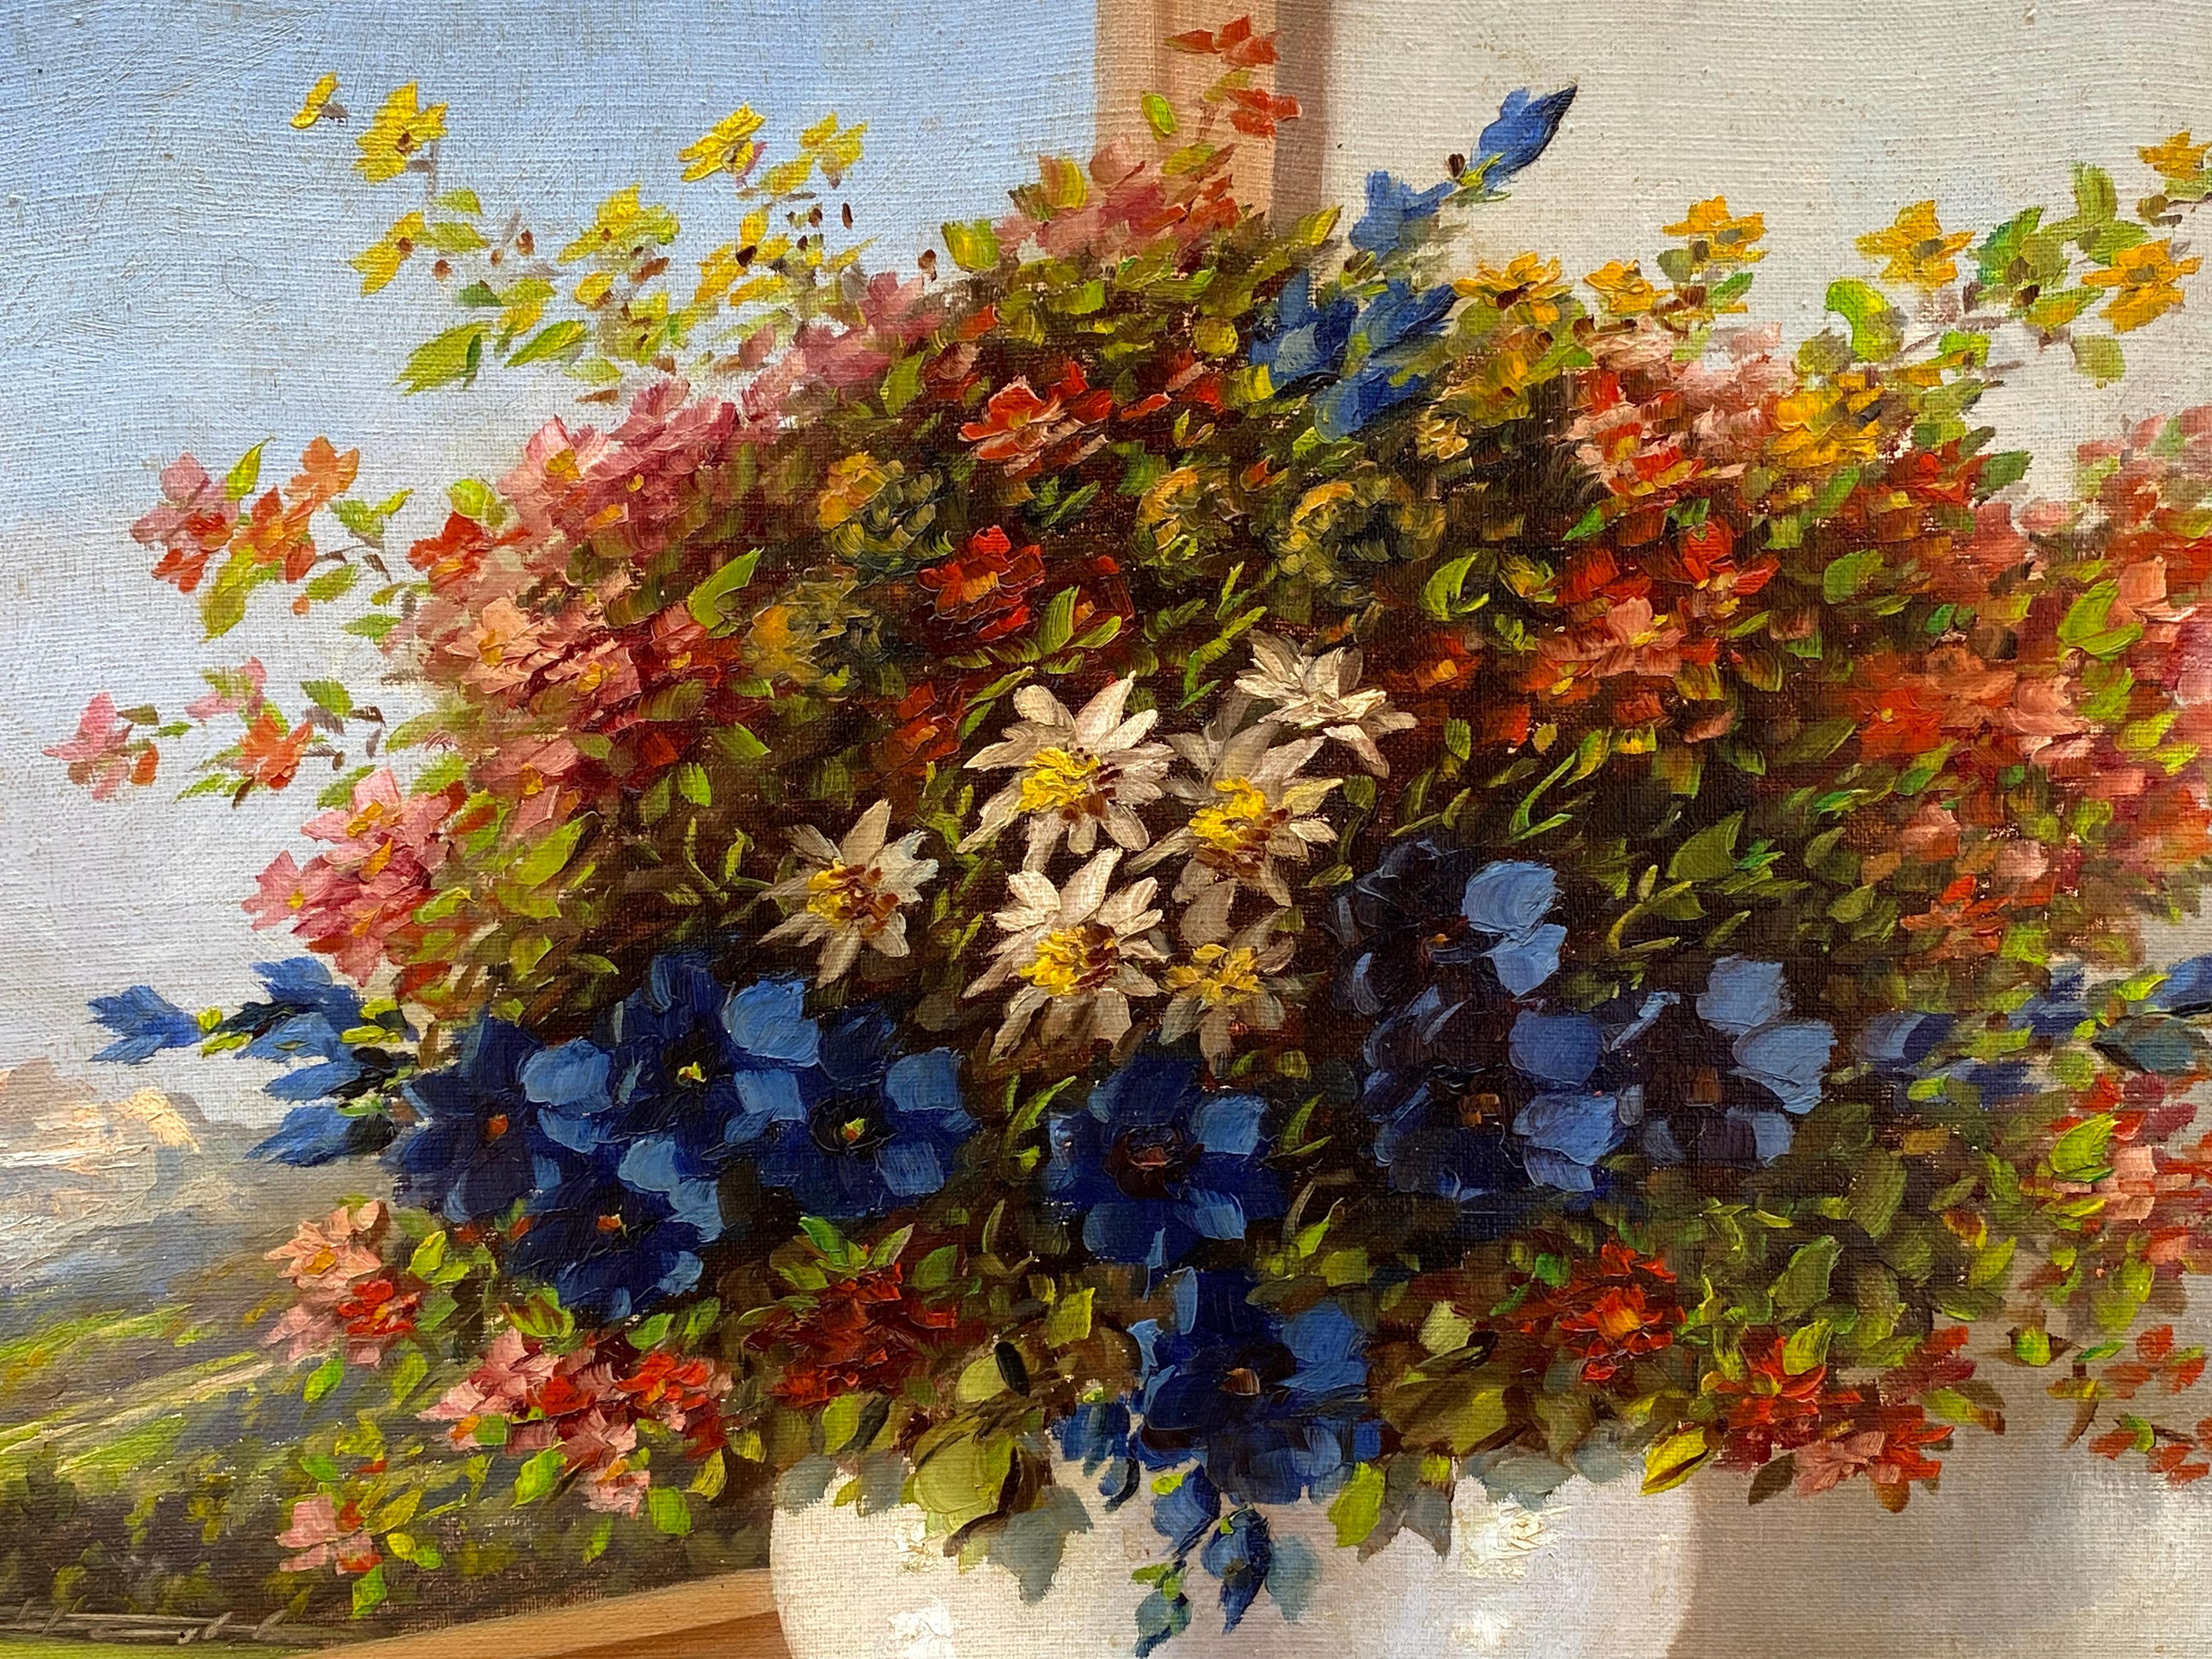 Blumenstrauß mit Wildblumen in Landschaft (Post-Impressionismus), Painting, von Keist Vakovic